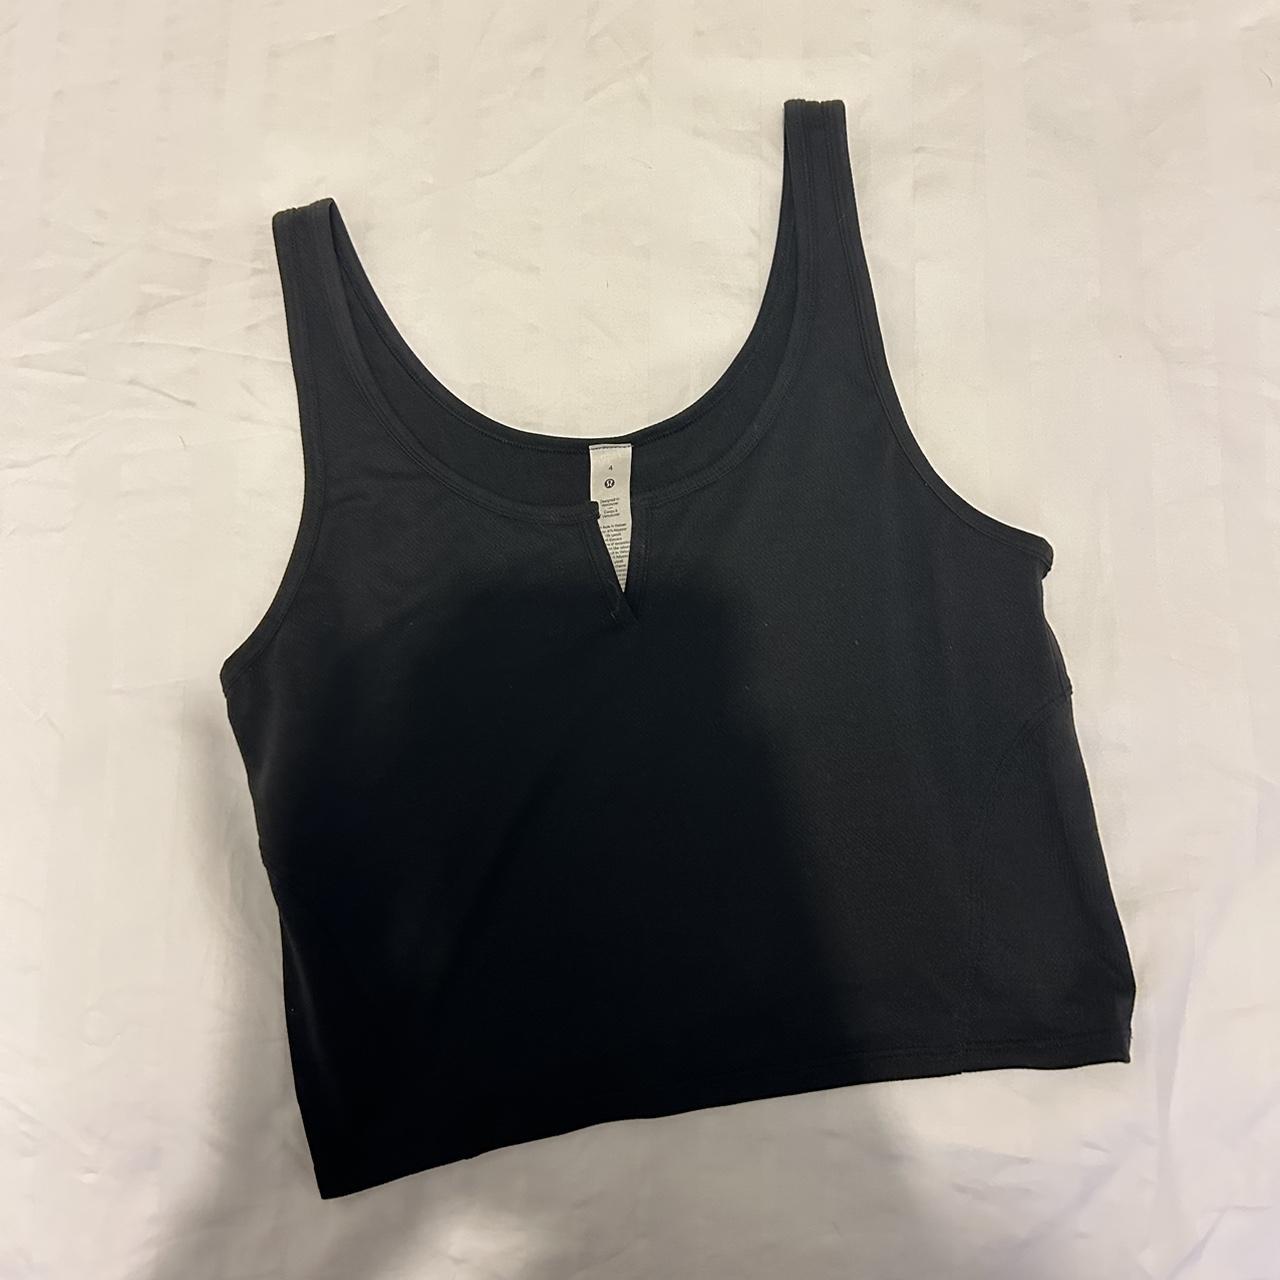 Lululemon black cropped workout top / vest Size US... - Depop